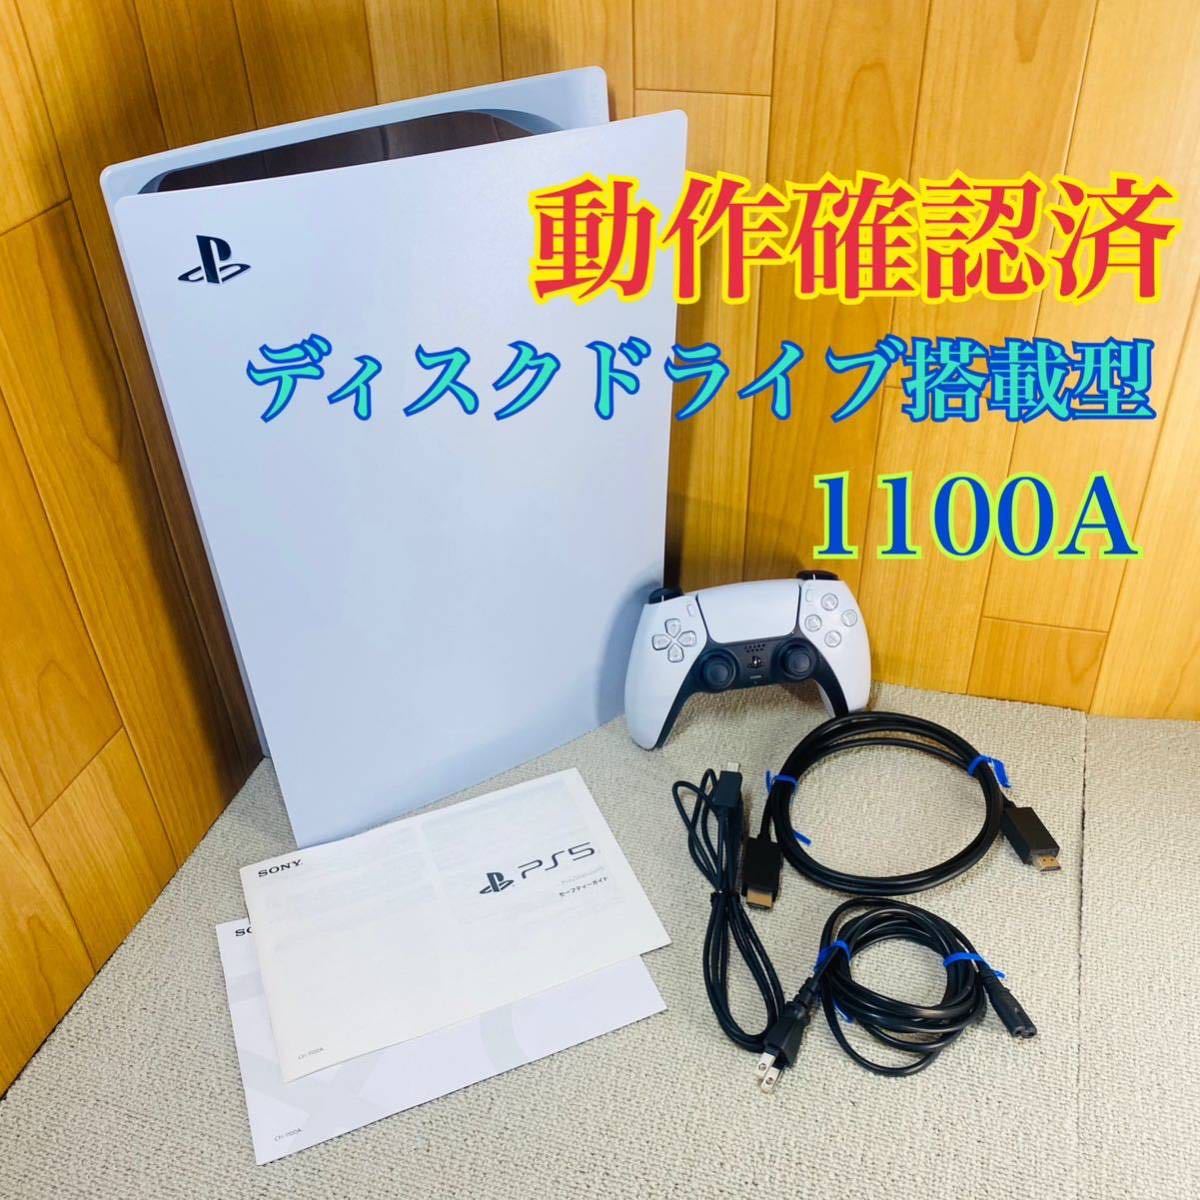 【動作確認済】SONY ps5 本体 1100A ディスクドライブ搭載型 モデル PlayStation5 プレイステーション5 プレステ5 説明書付き_画像1